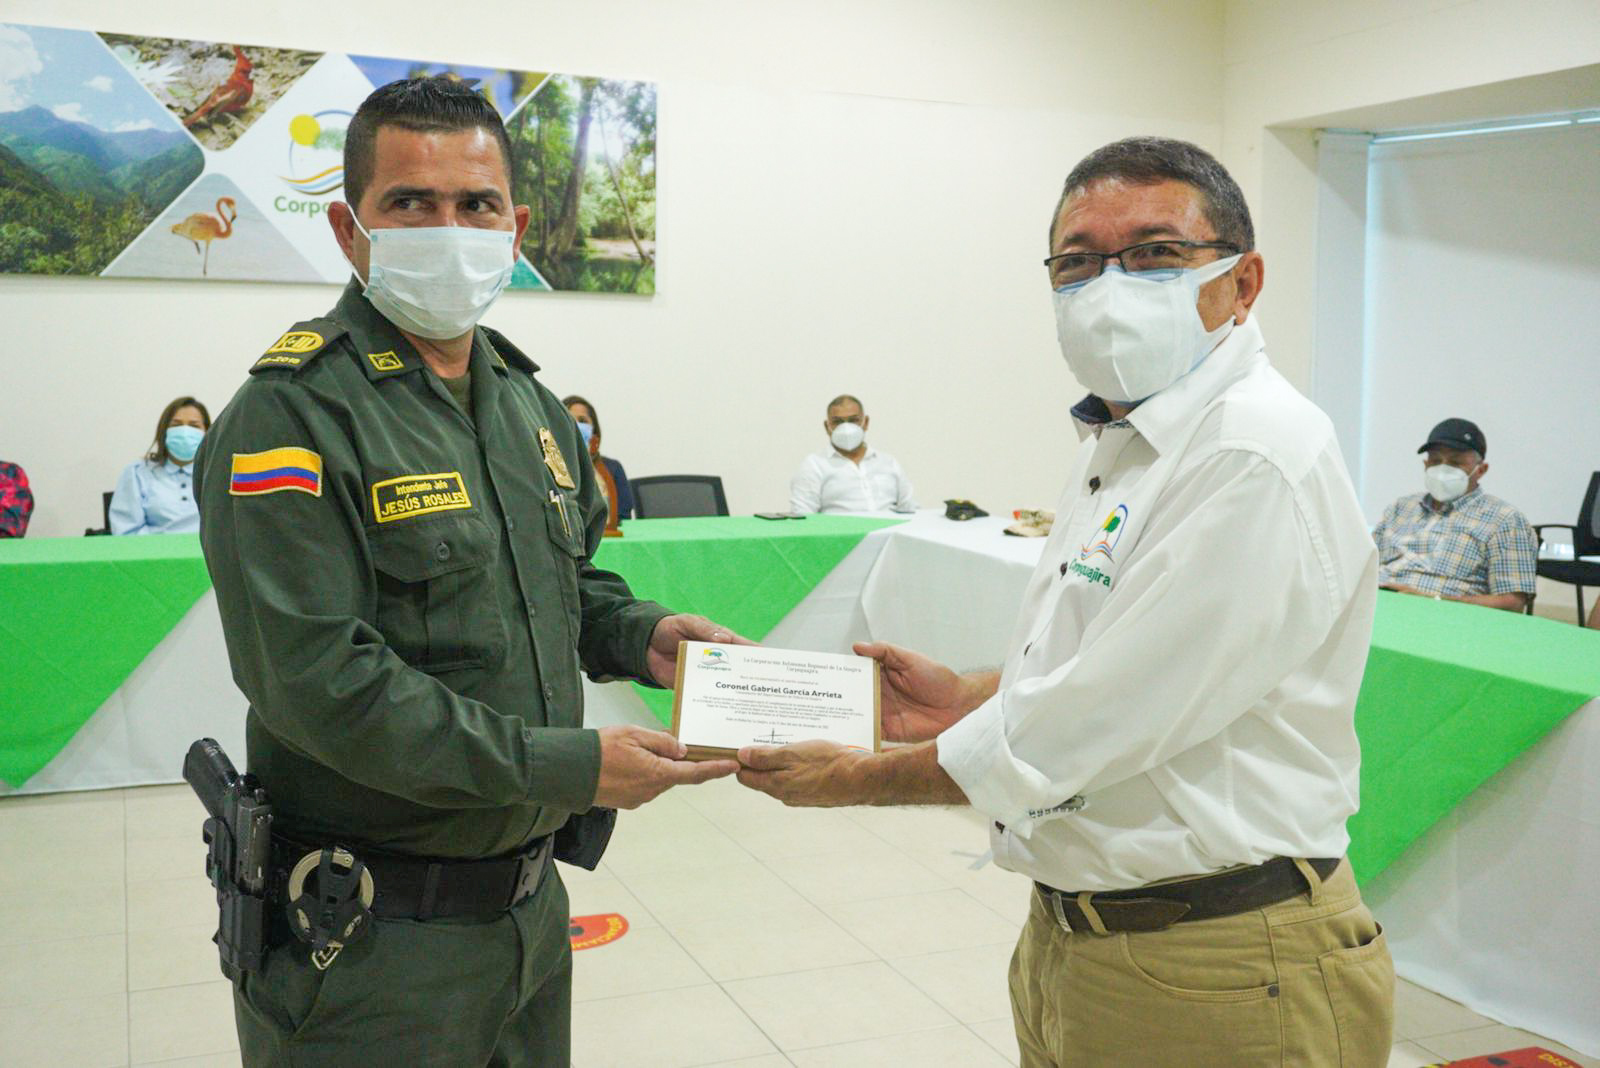 El Subdirector de Gestión Ambiental de Corpoguajira, Julio Vega, hace entrega del reconocimiento al mérito ambiental al Intendente Jefe de la Policía Ambiental, Jesús Rosales Vidal.